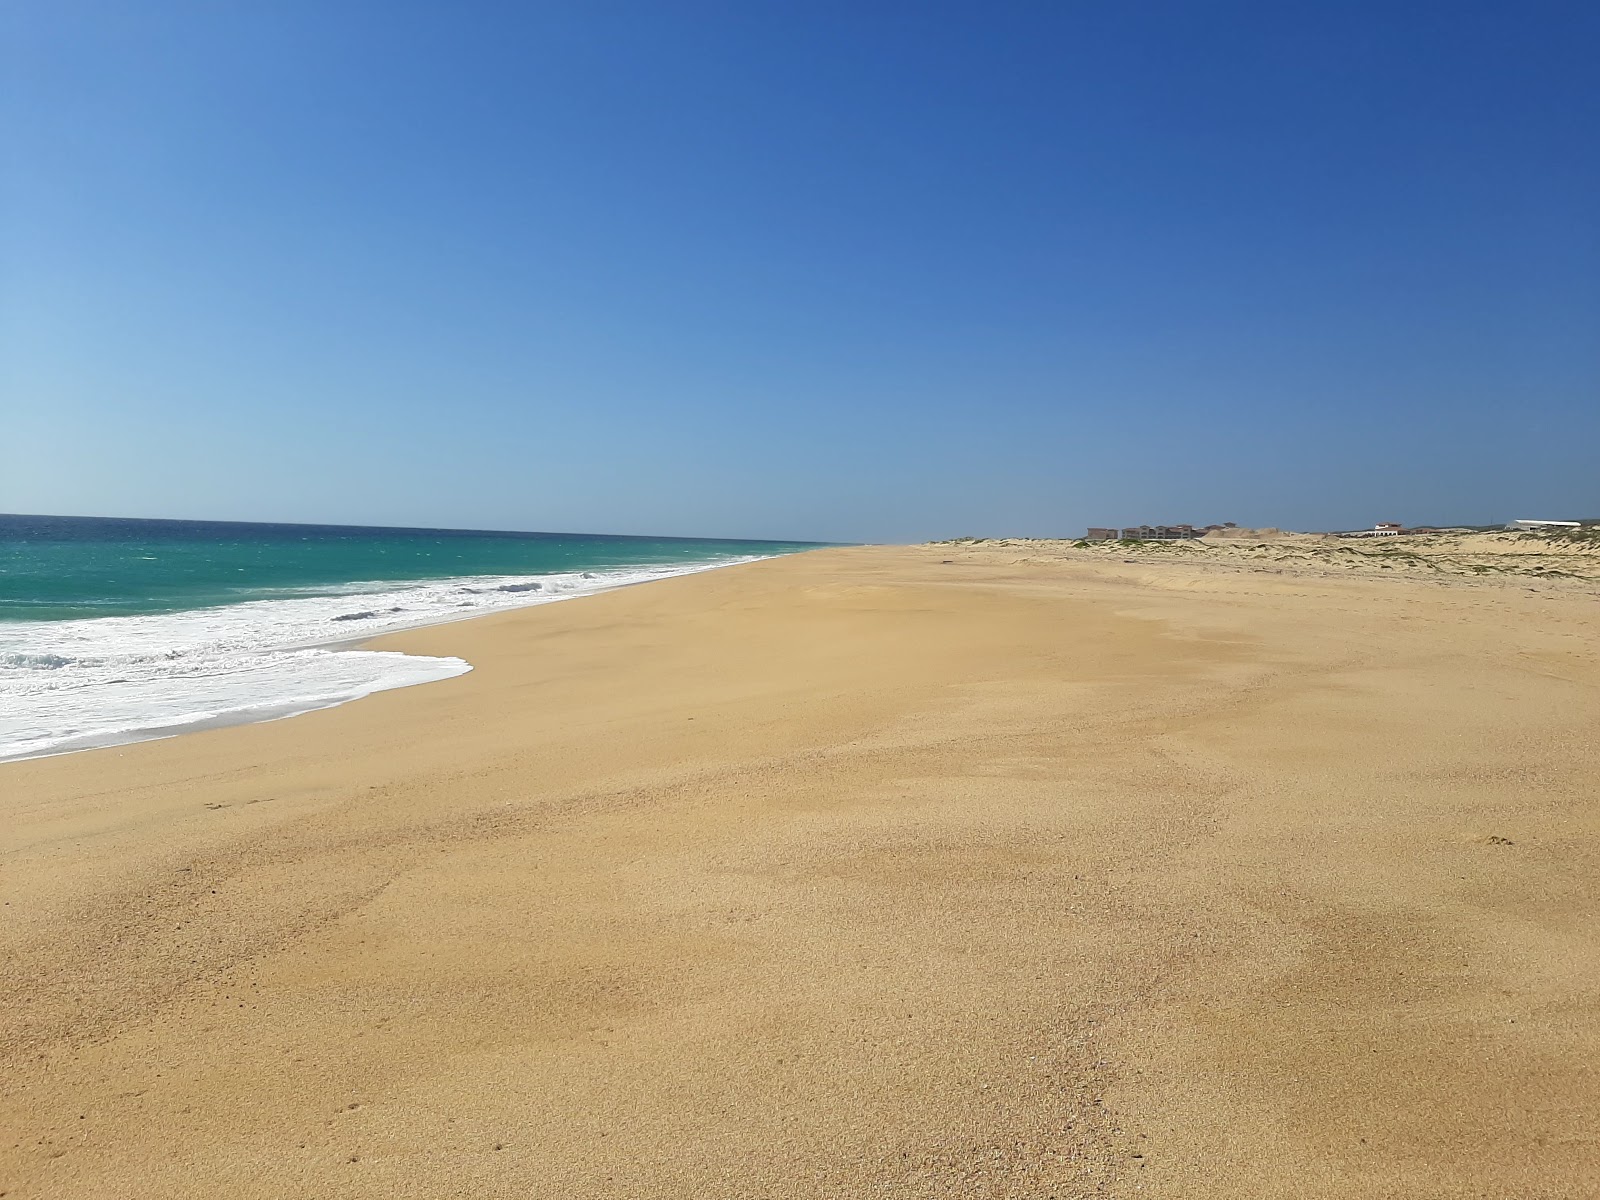 Fotografie cu Playa El Suspiro cu o suprafață de nisip fin strălucitor